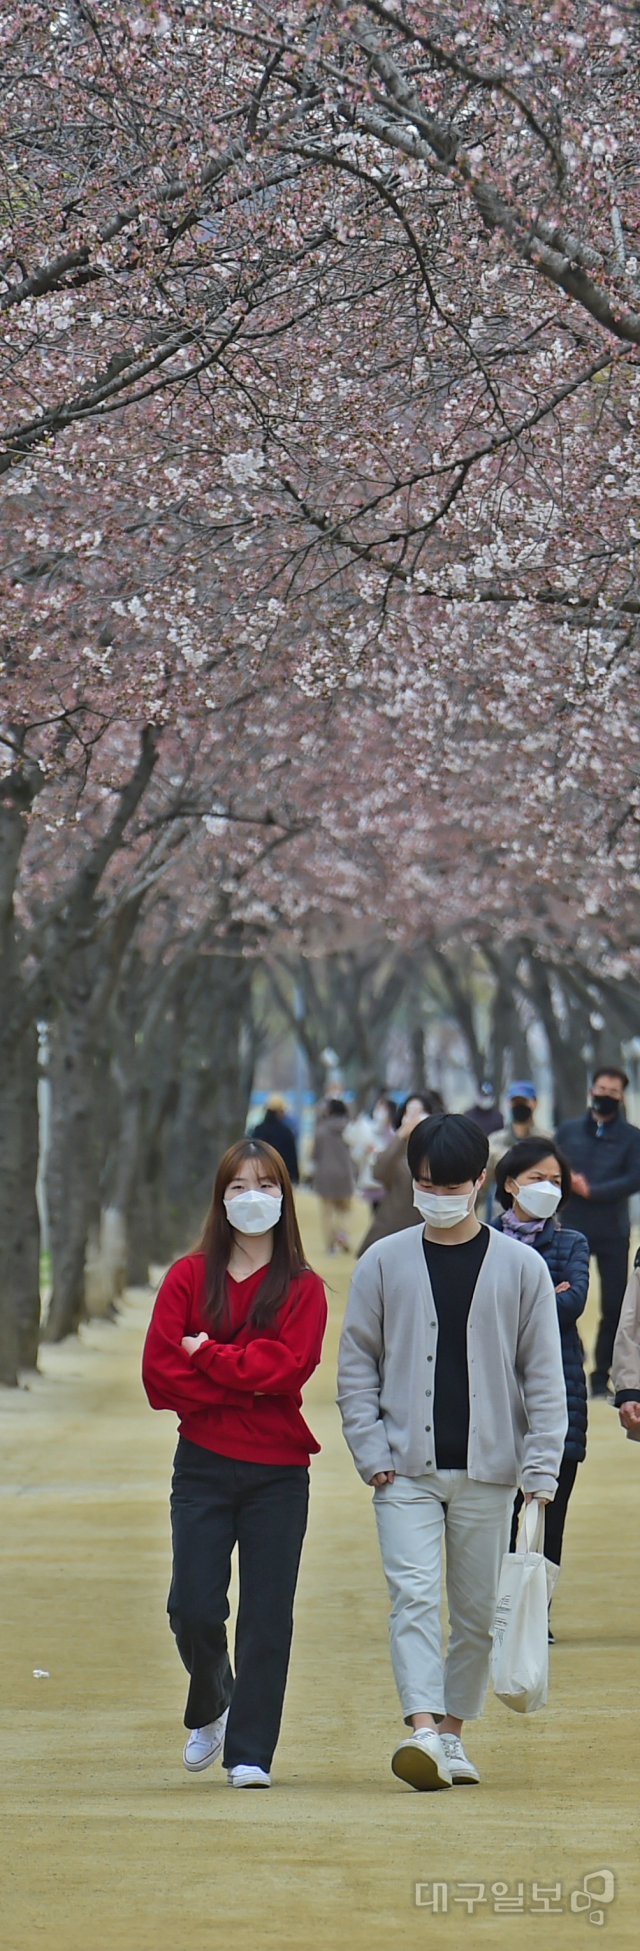 ▲ 24일 오후 벚꽃이 피기 시작한 대구 동구 금호강변 인근 산책로에서 시민들이 완연한 봄기운을 만끽하고 있다.